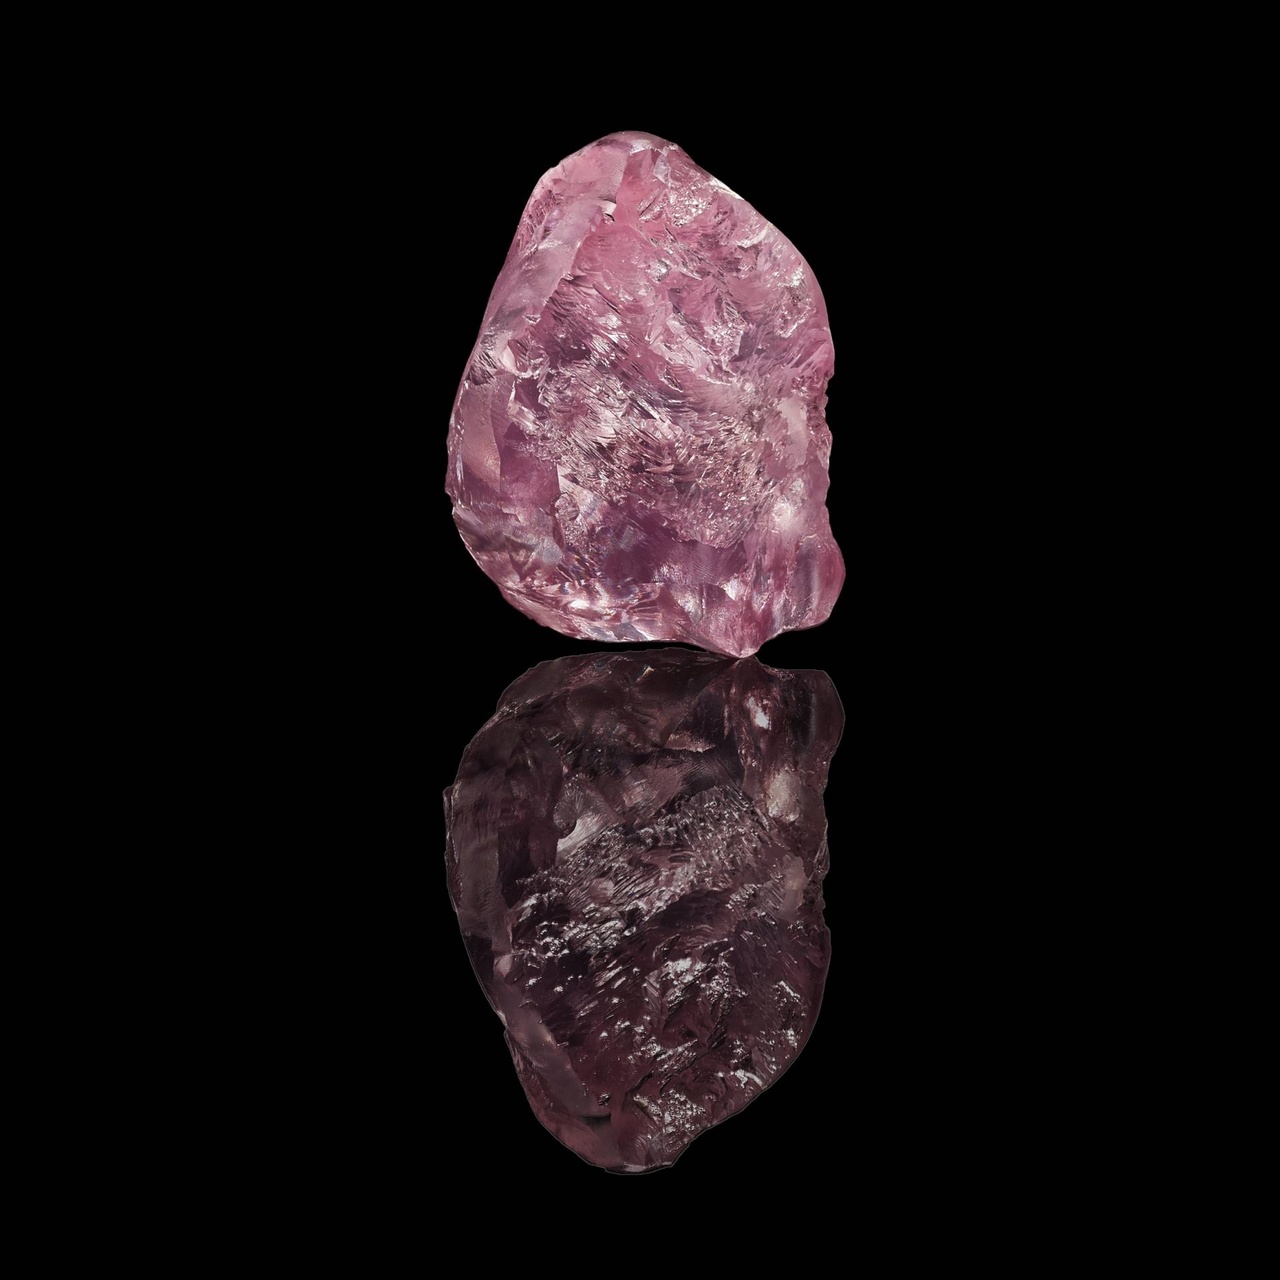 格拉夫欣然宣布購得一顆珍罕非凡的13.33克拉粉紅鑽原石，原石由Gem Diamonds於2019年2月在非洲萊索託的Letseng鑽礦發現。